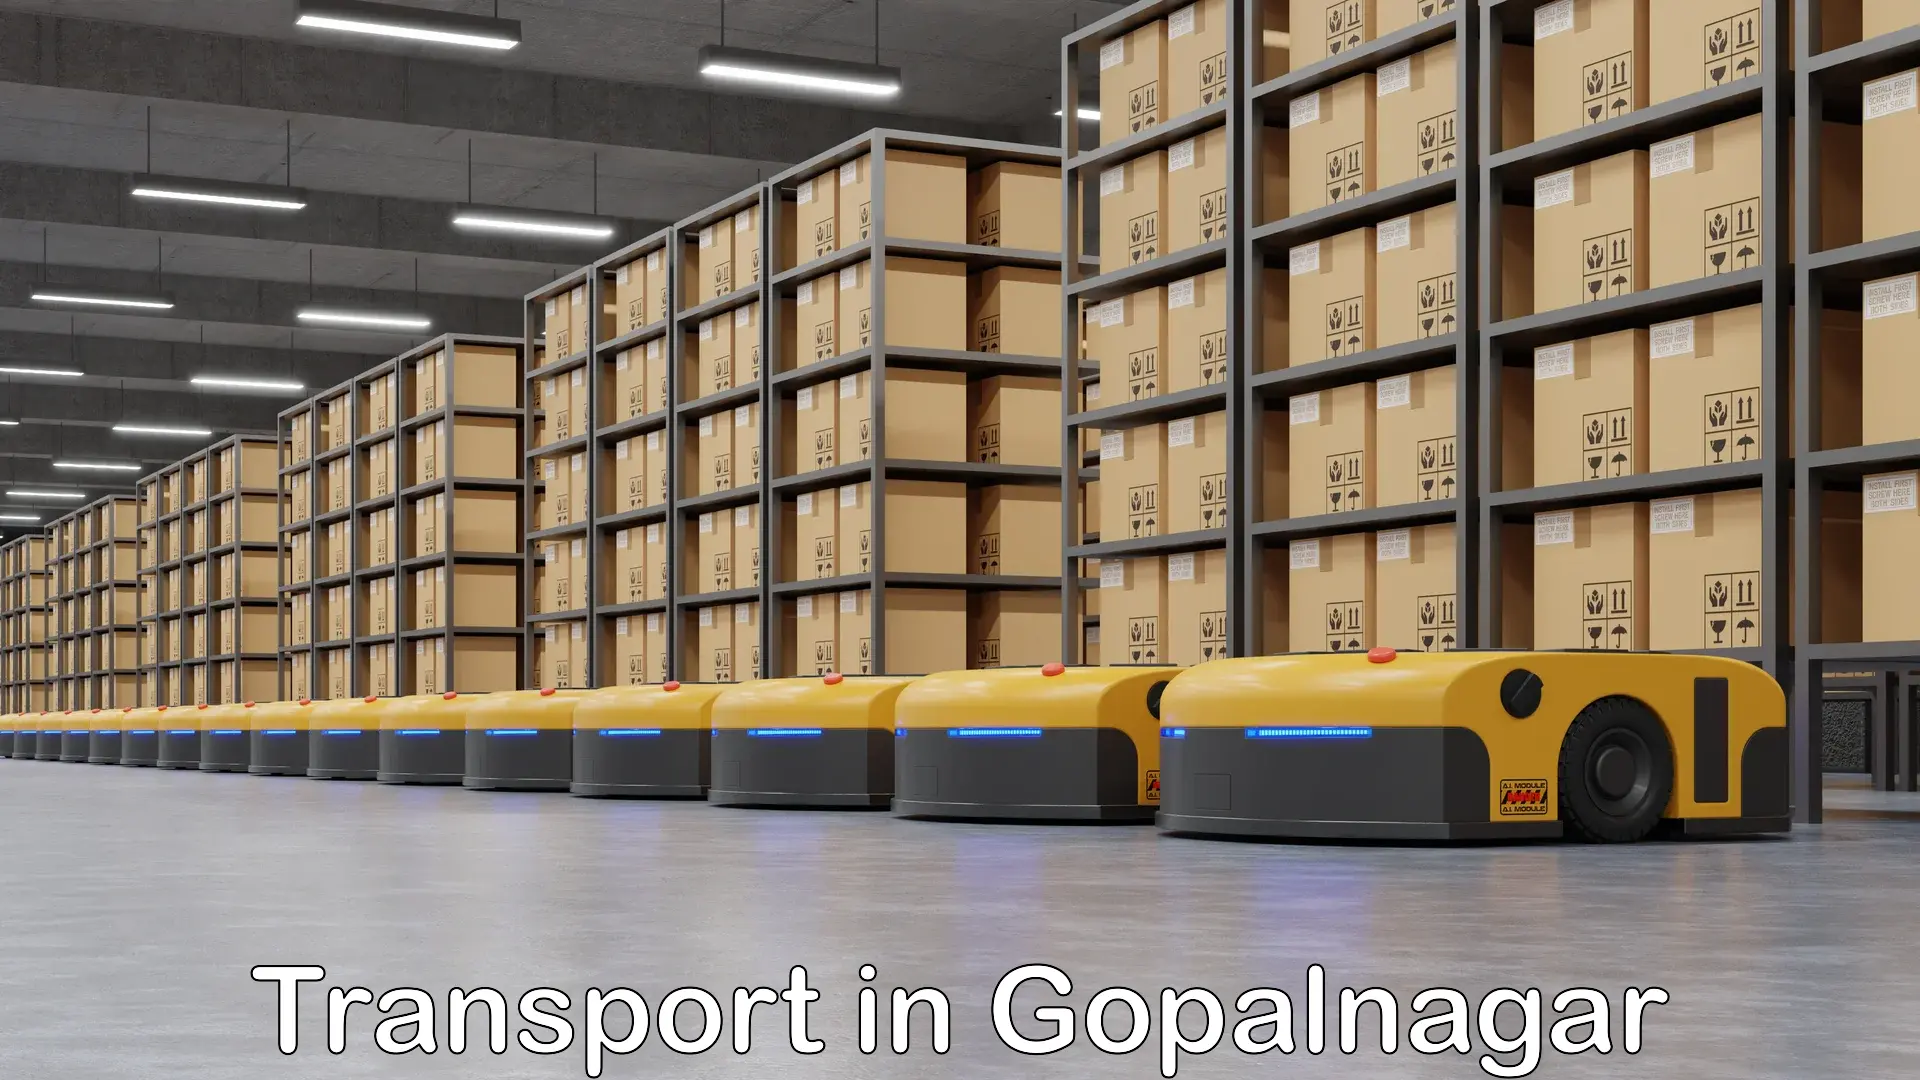 International cargo transportation services in Gopalnagar